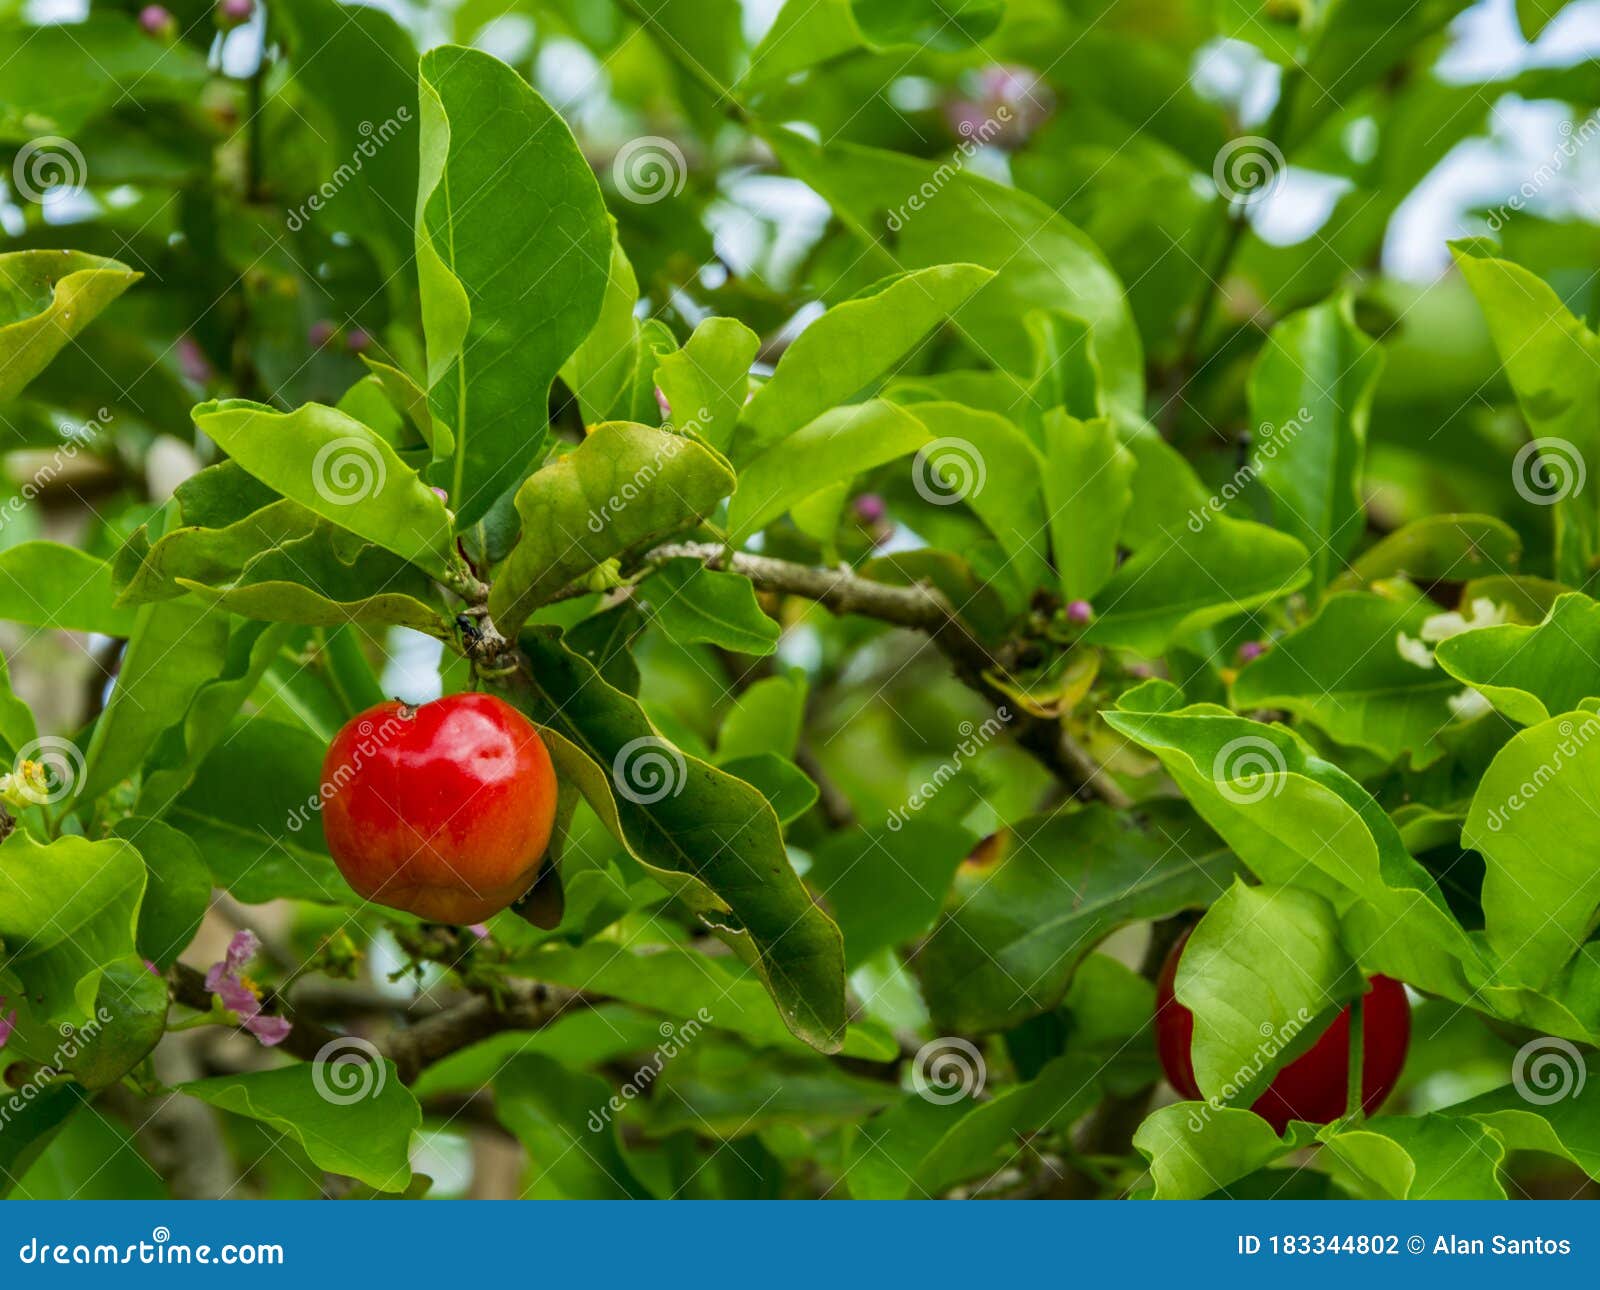 we call this cherry as pitanga